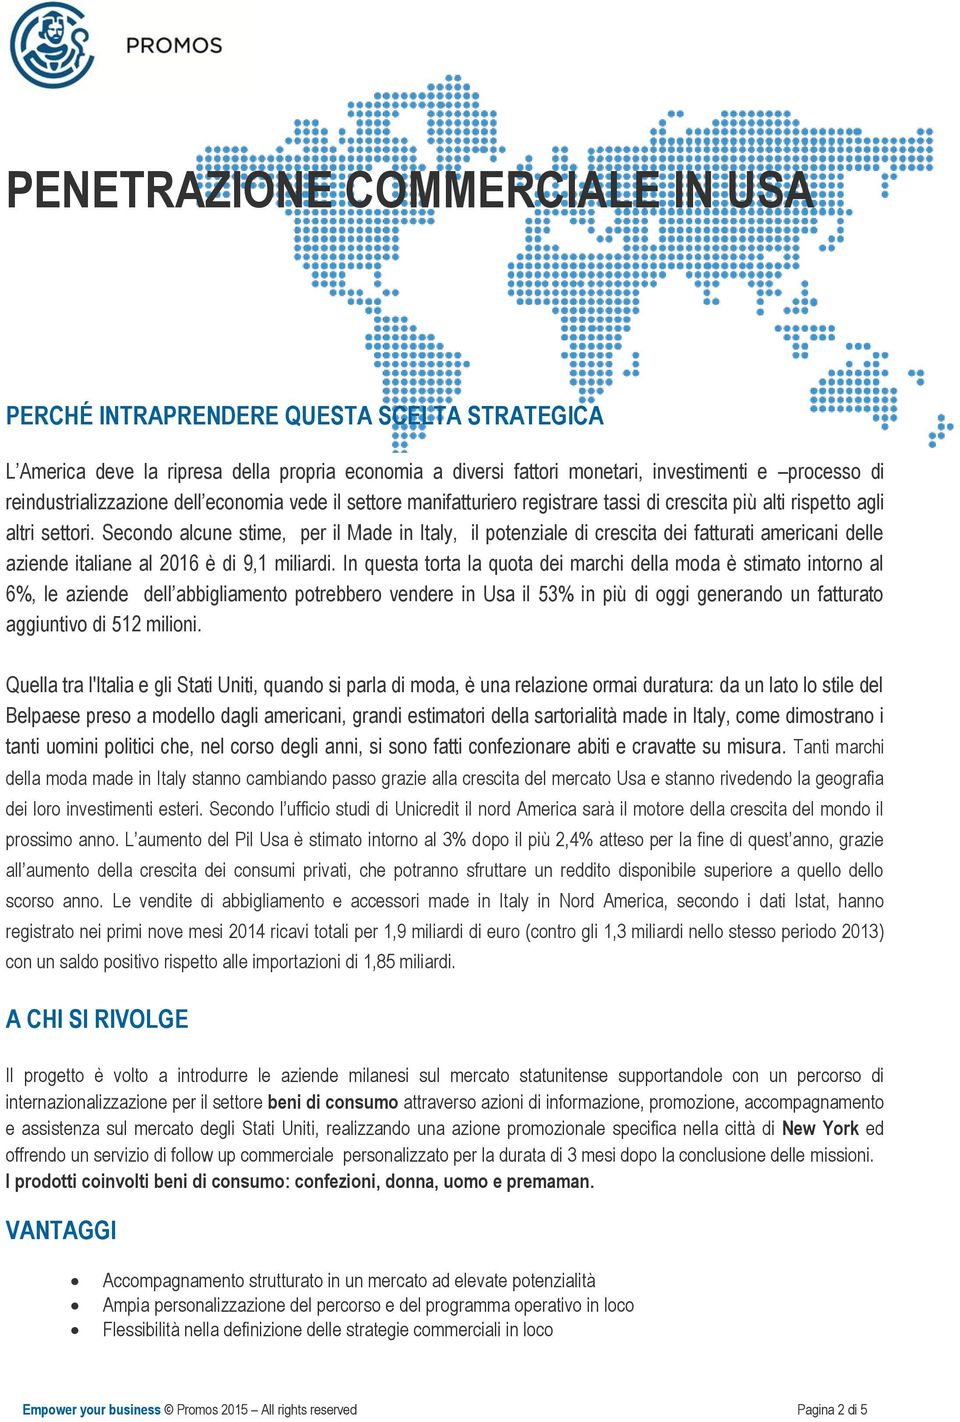 Secondo alcune stime, per il Made in Italy, il potenziale di crescita dei fatturati americani delle aziende italiane al 2016 è di 9,1 miliardi.